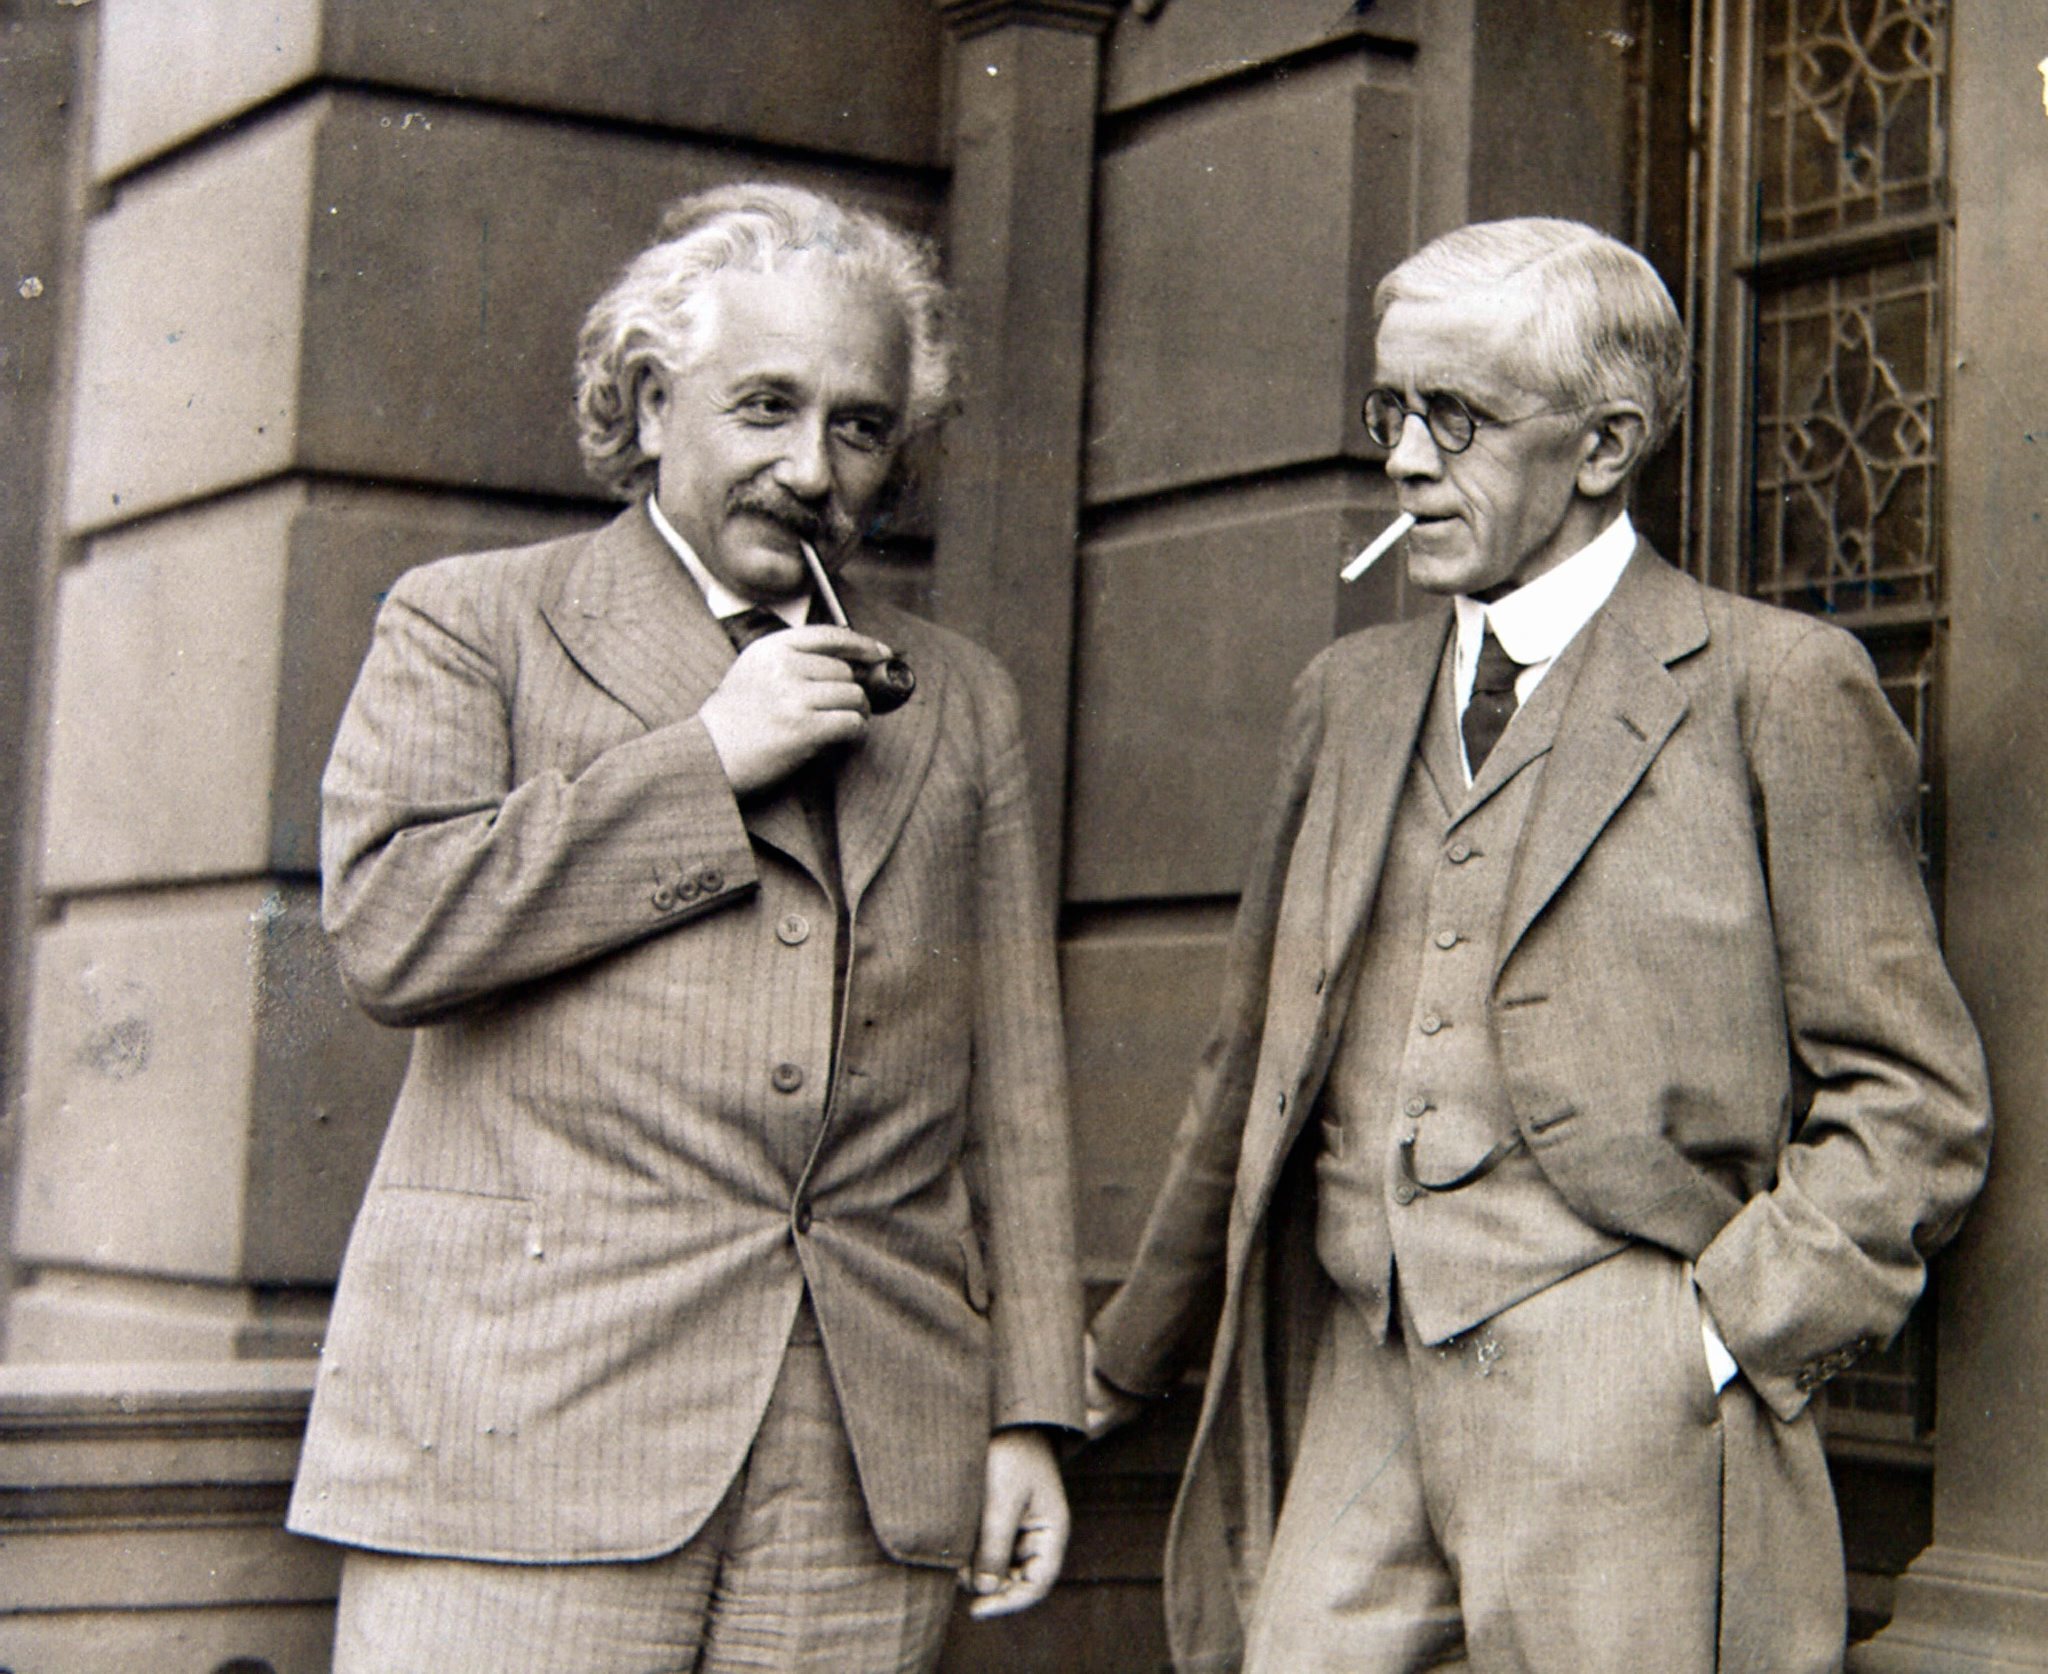 Remembering when Albert Einstein 'graduated' from Glasgow University